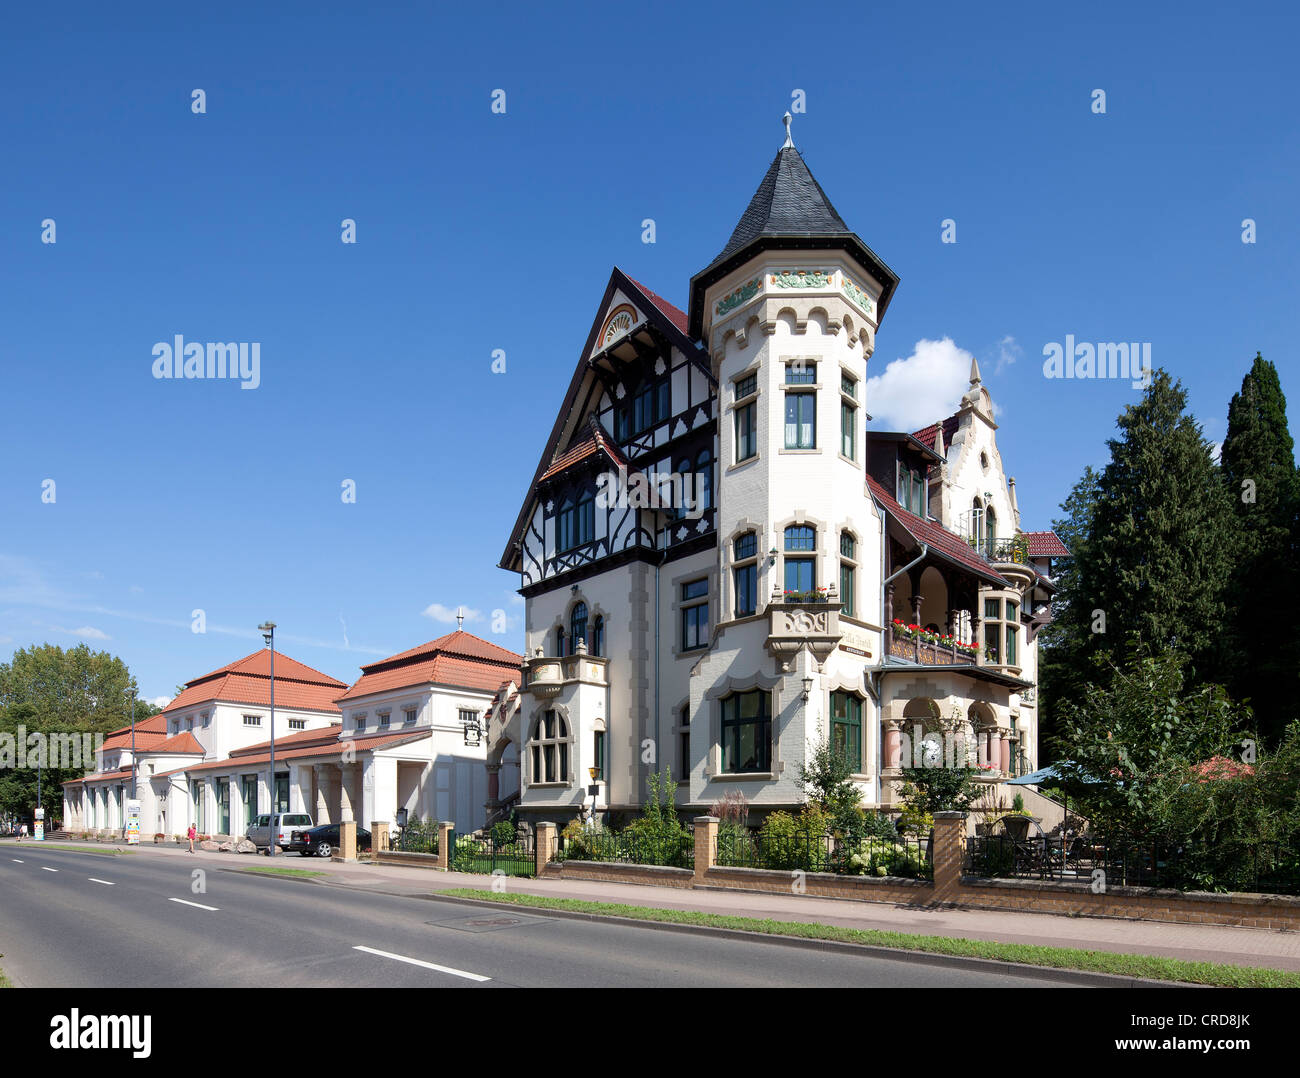 Urban villa, Wartburgallee street, Eisenach, Thuringia, Germany, Europe, PublicGround Stock Photo